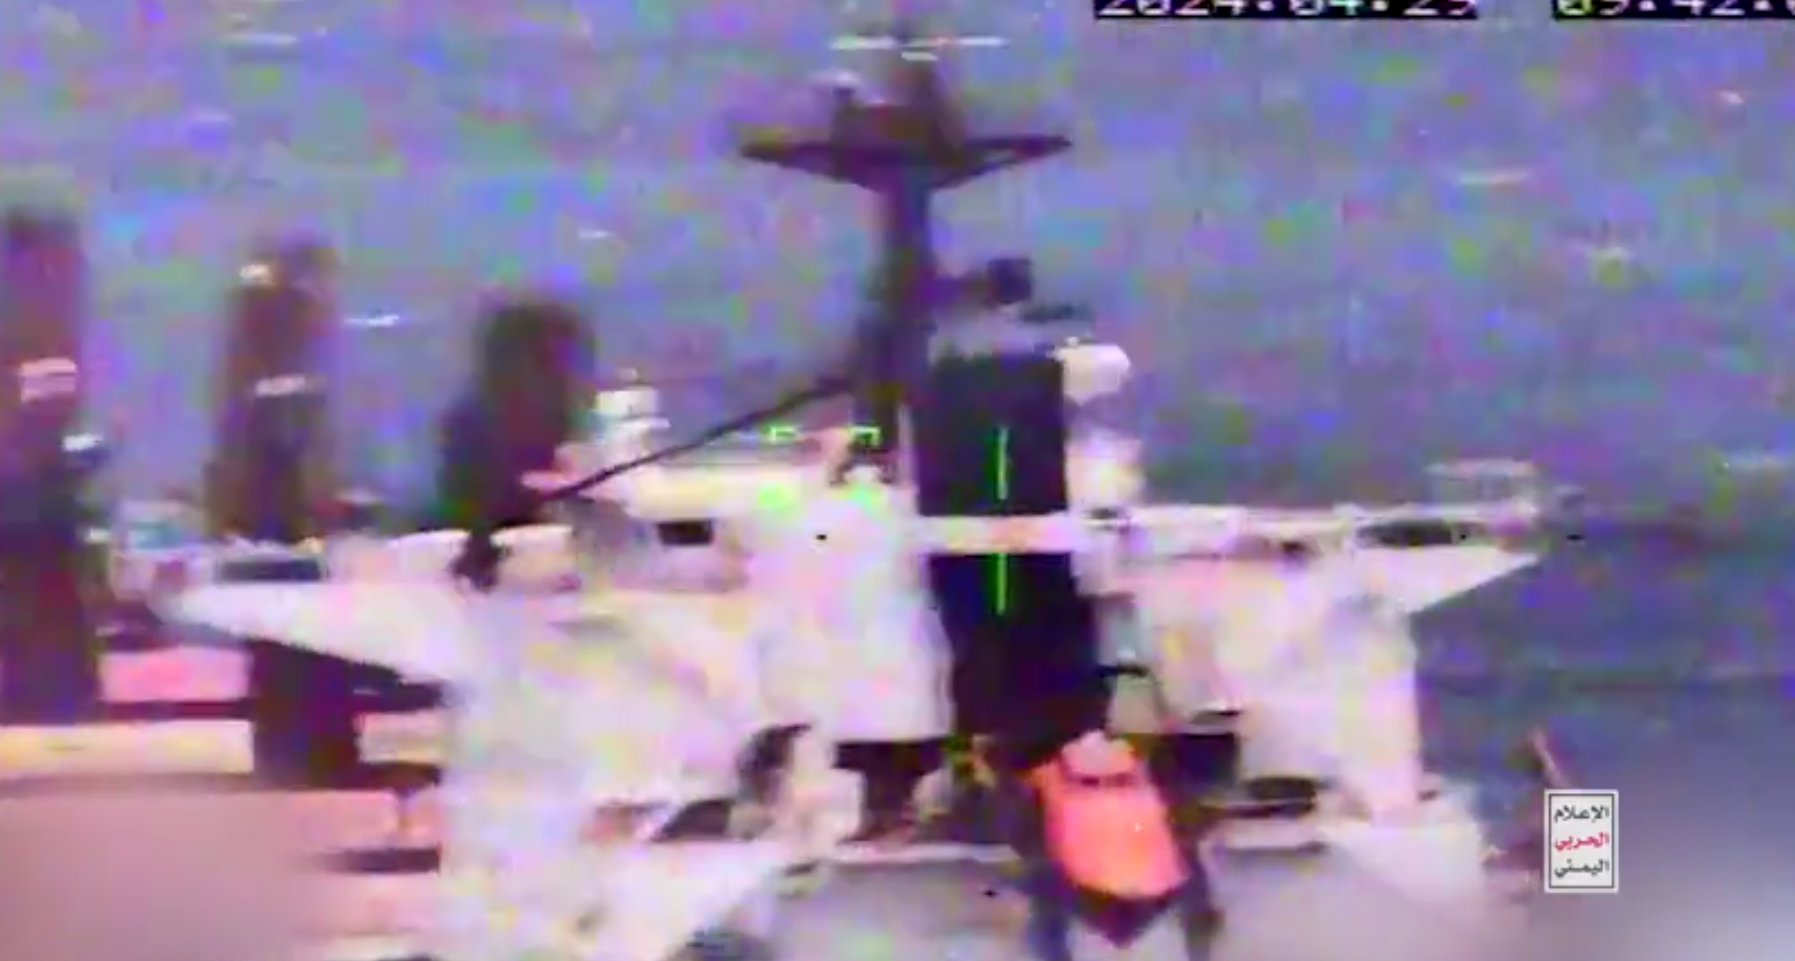 "انطلقت ووصلت إلى هدفها"..الحوثيون يعرضون مشاهد من استهداف سفينة "CYCLADES" بالبحر الأحمر (فيديو)